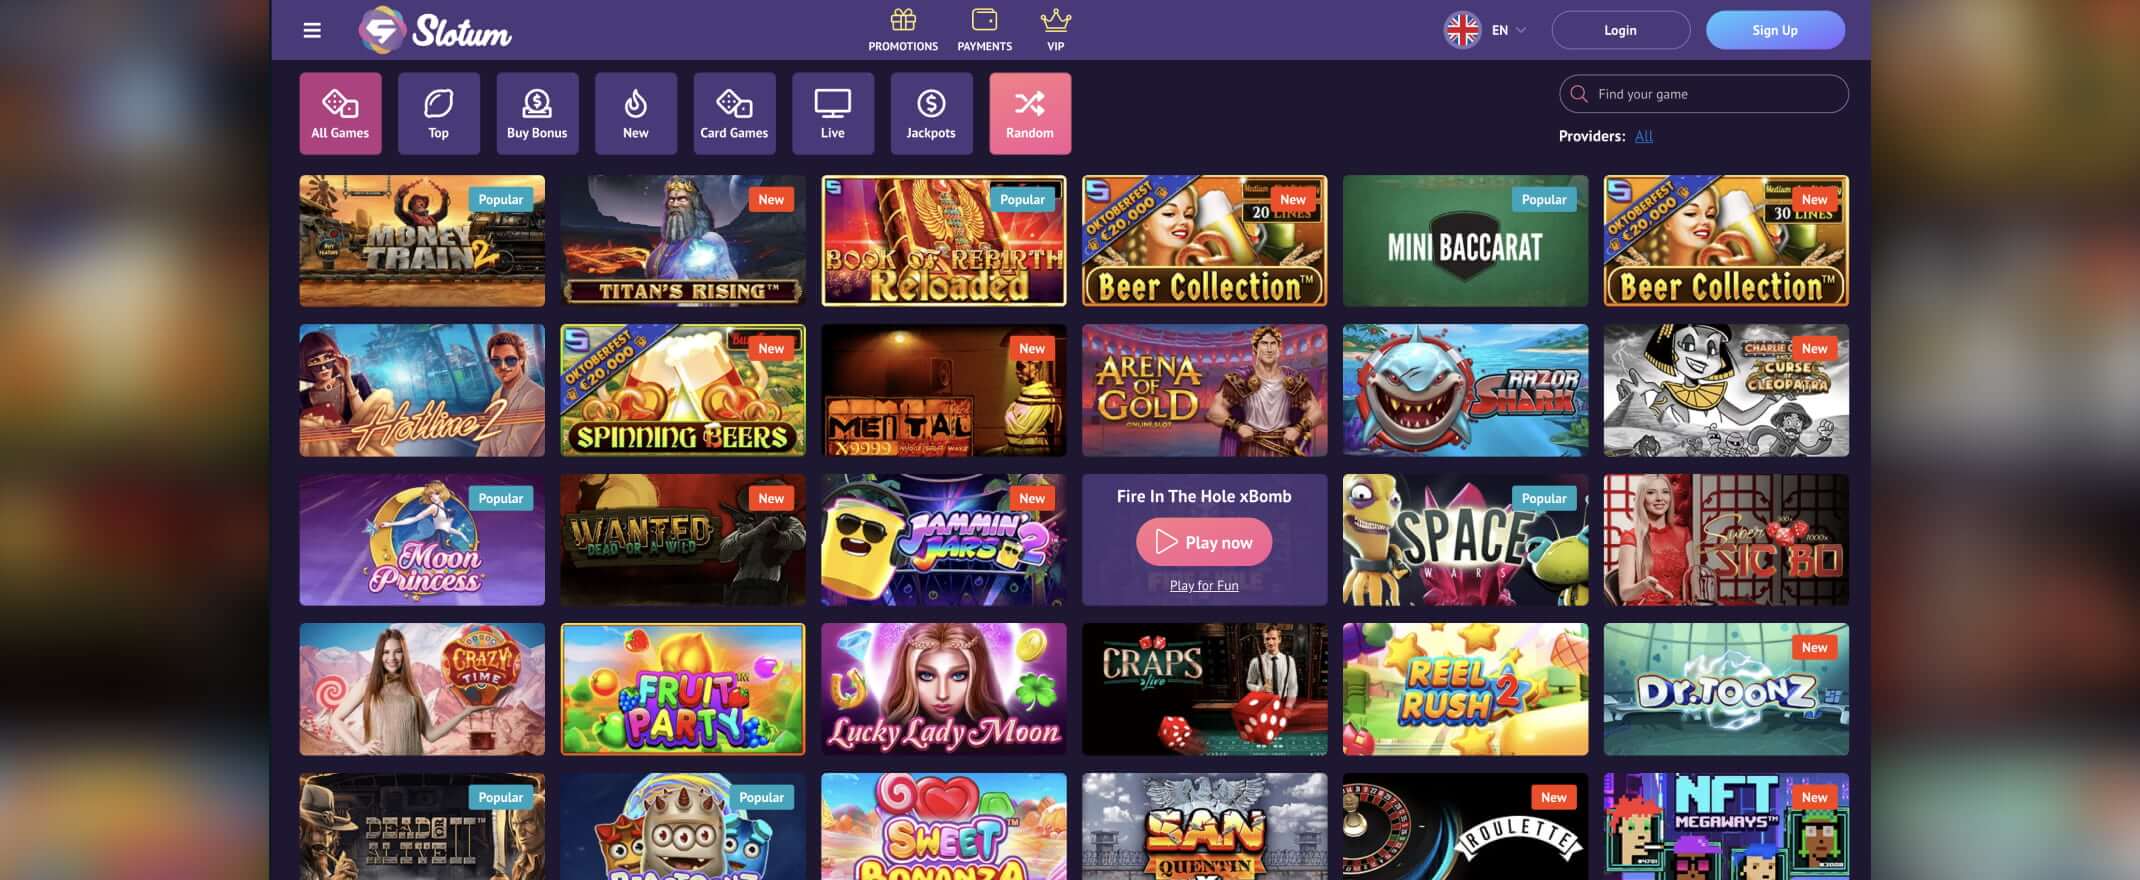 Slotum Casino screenshot of the games